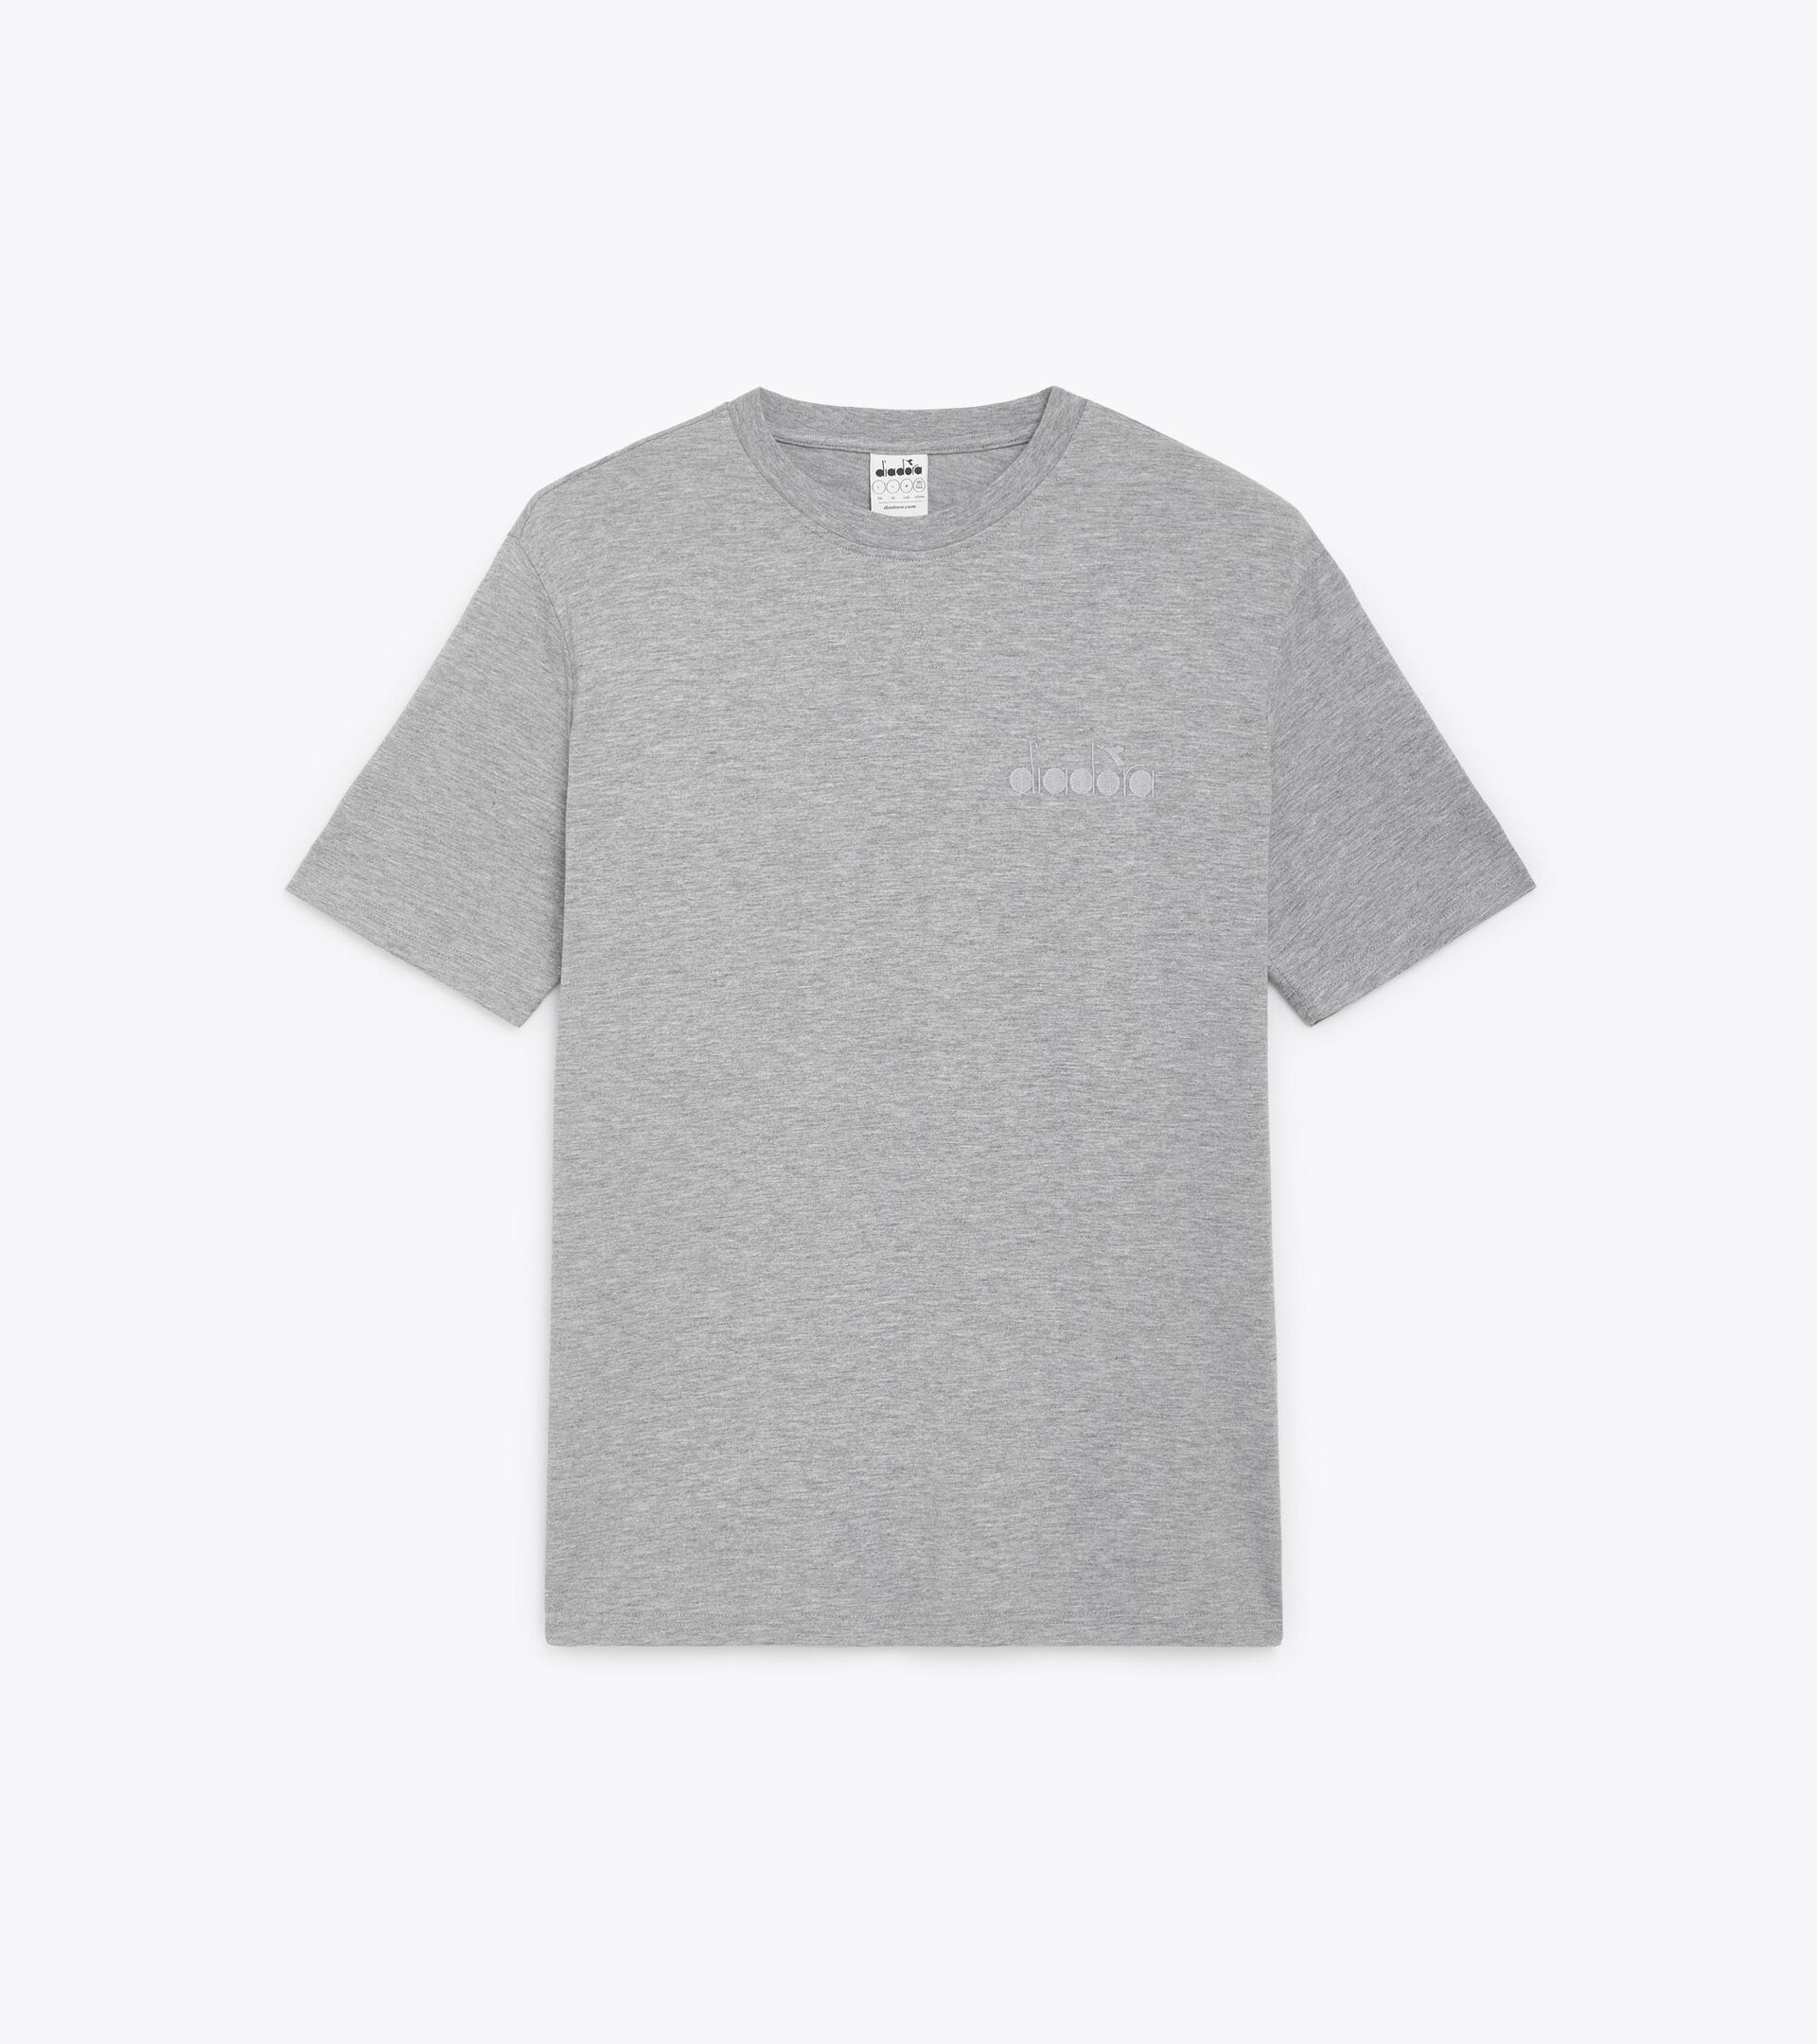 T-SHIRT SS ATHL. LOGO T-shirt - Gender Neutral - Diadora Online Store US